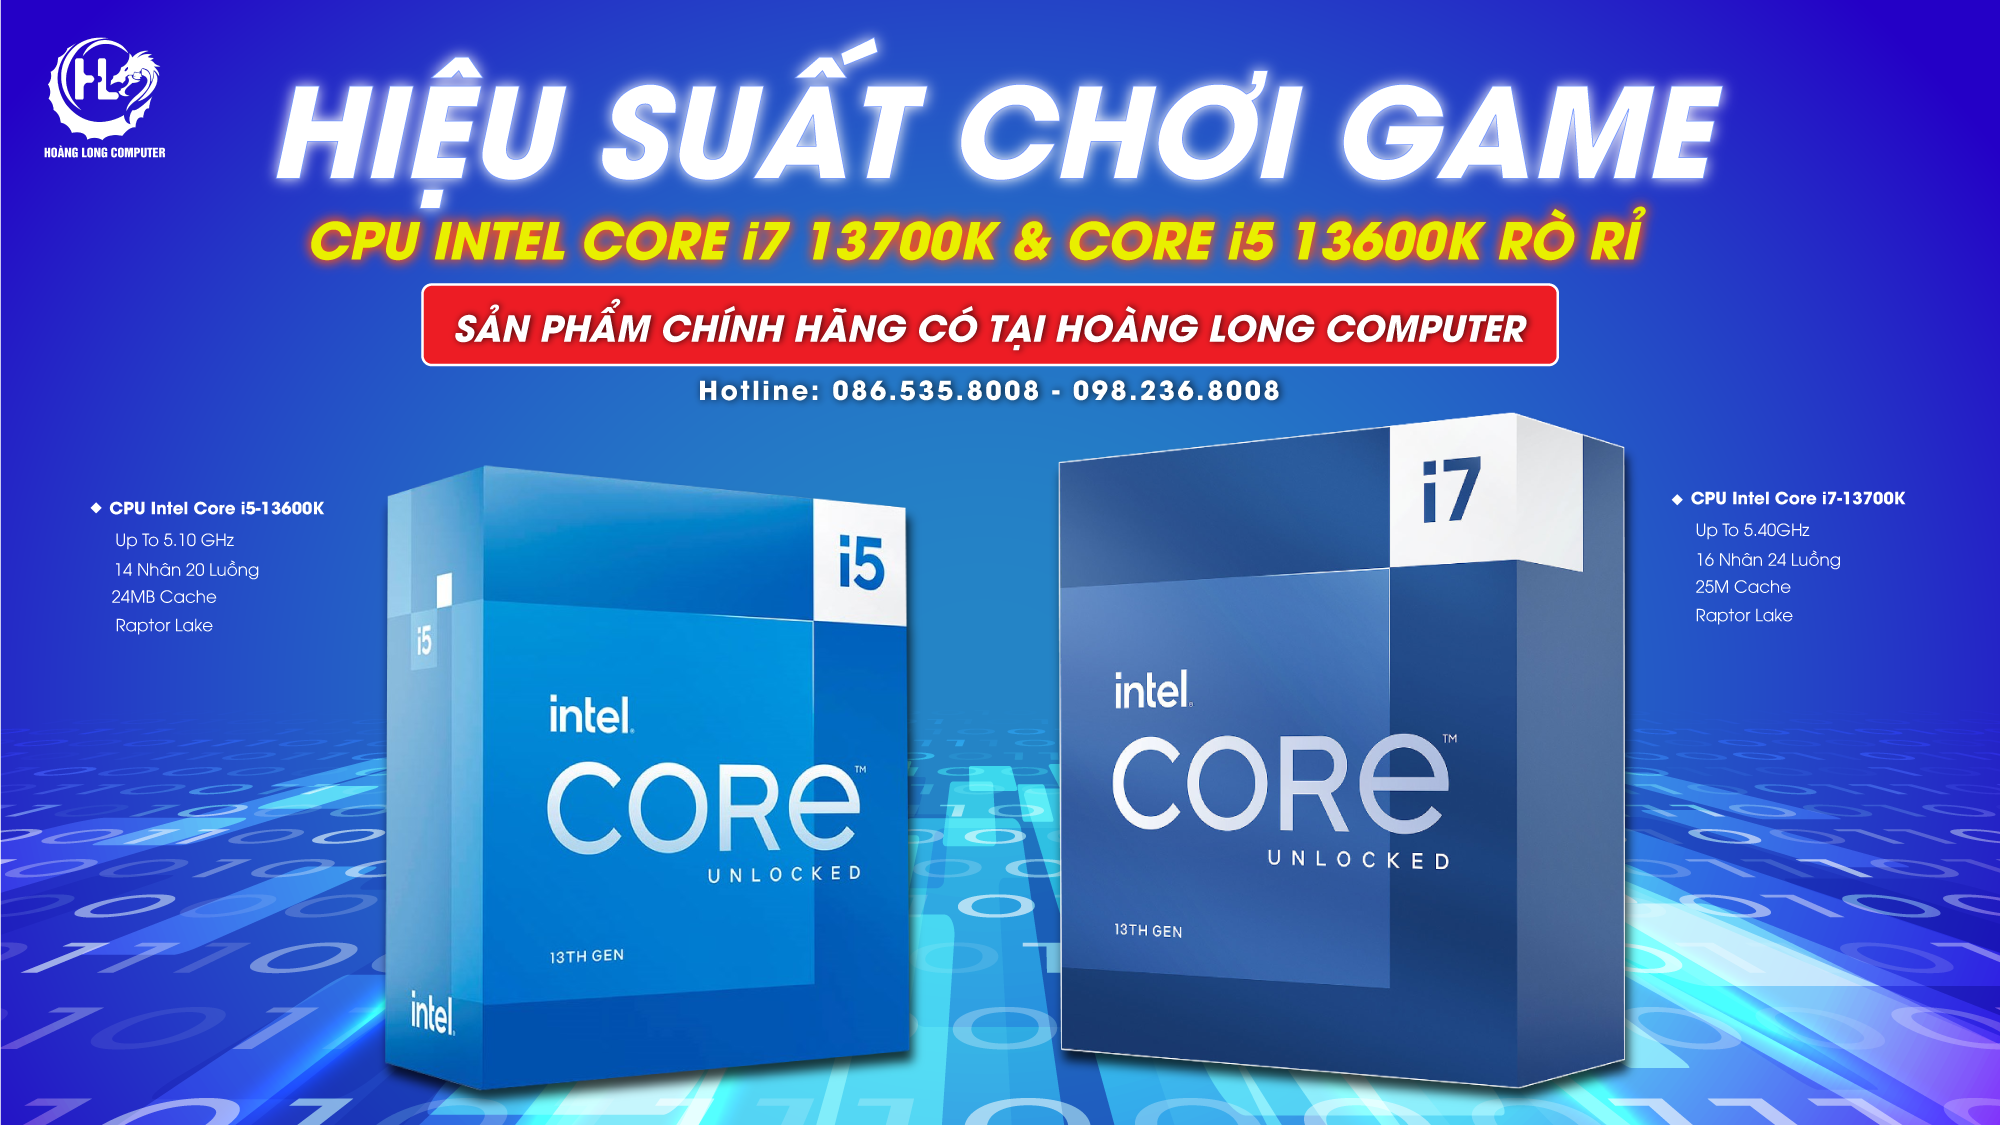 Hiệu suất chơi game CPU Intel Core i7 13700K & Core i5 13600K bị rò rỉ